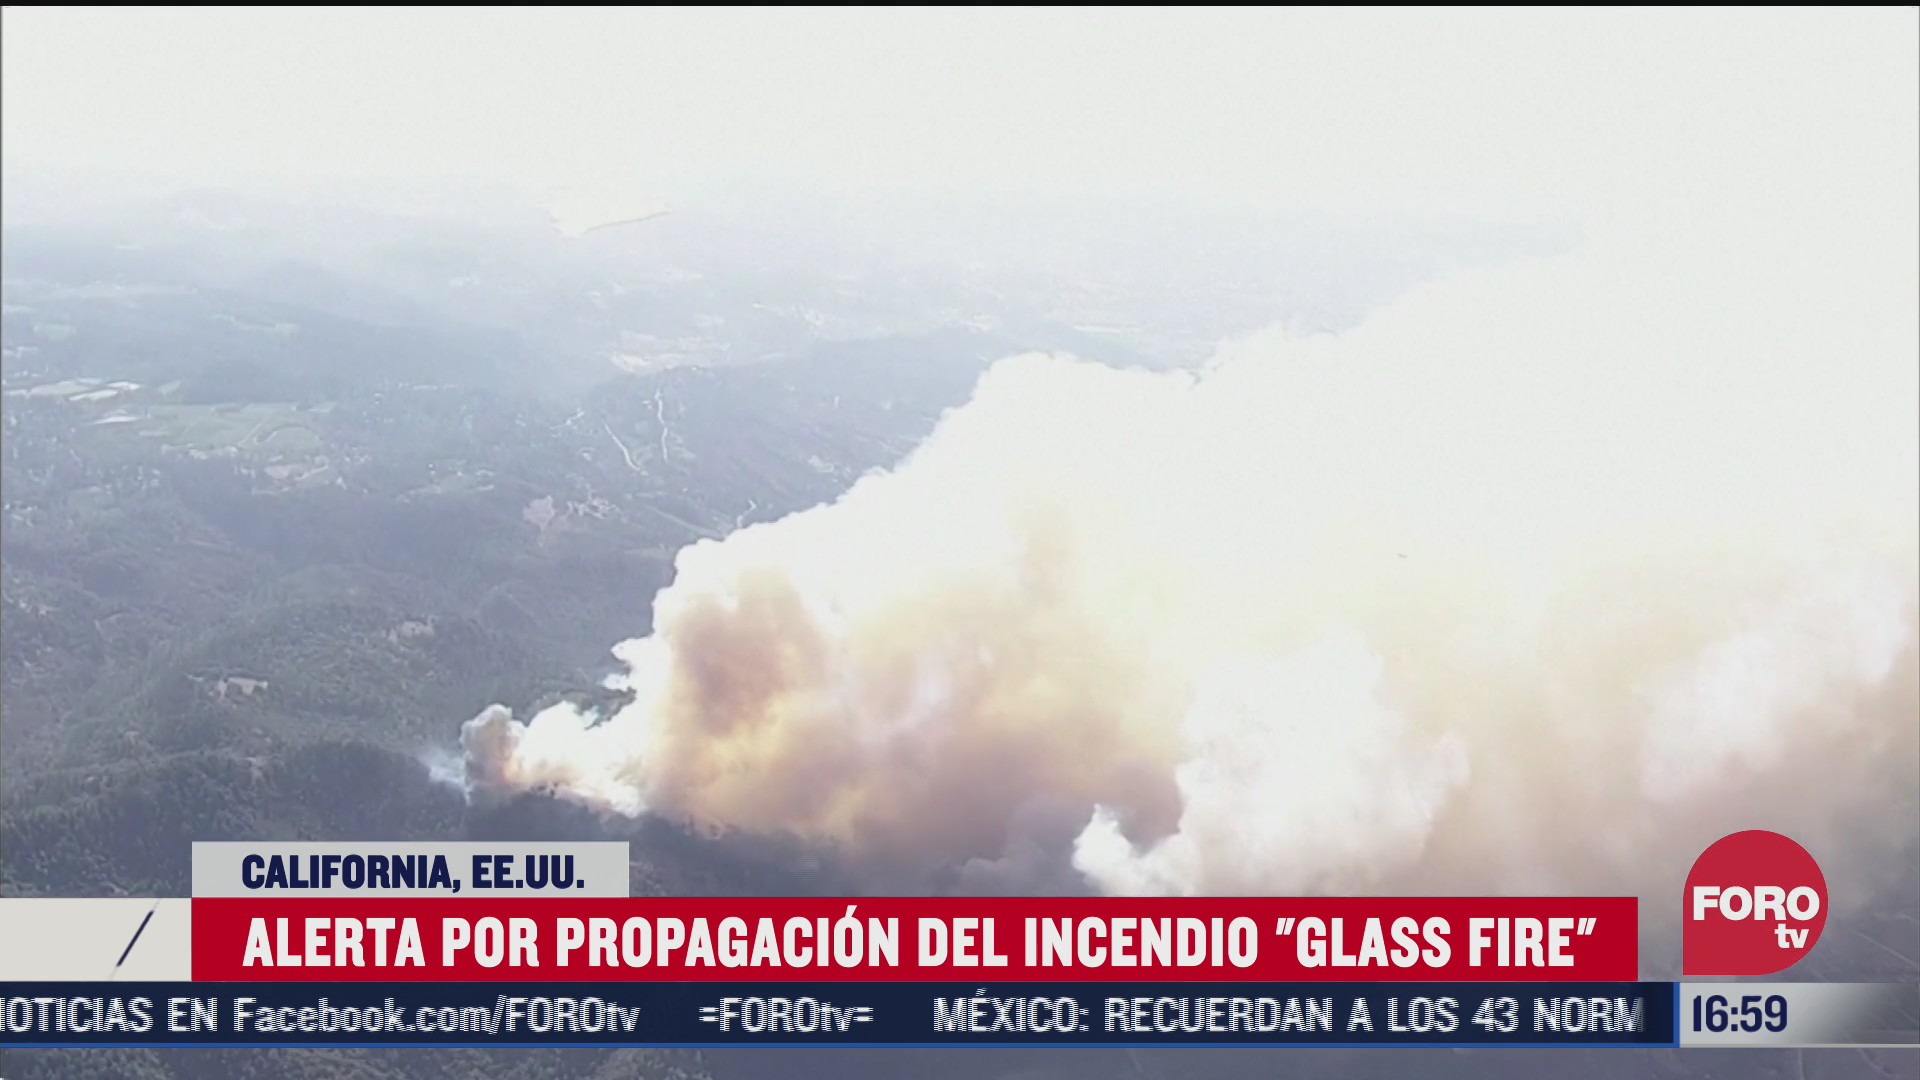 incendio glass fire consume 485 hectareas en california